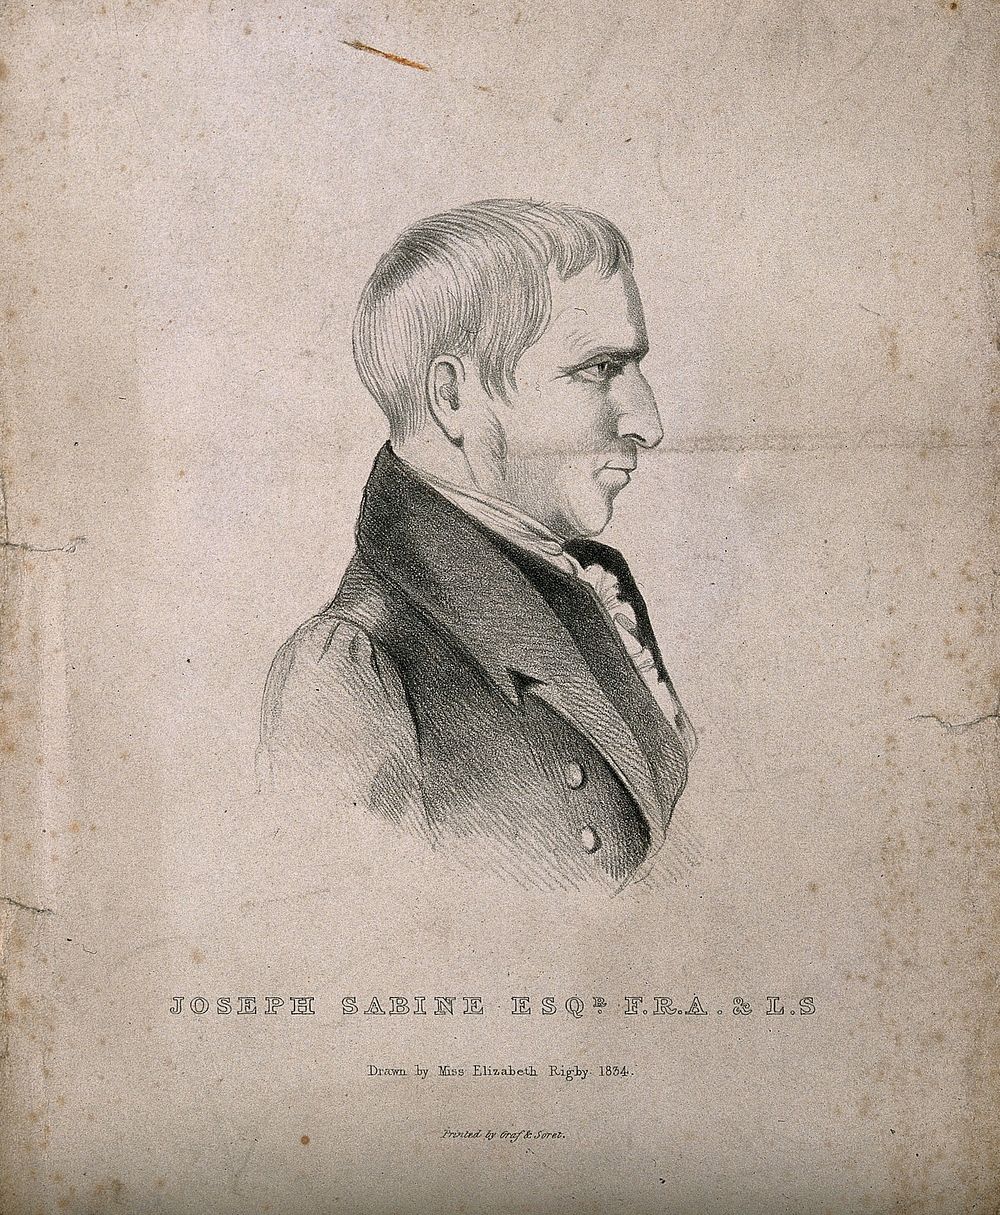 Joseph Sabine. Lithograph by Elizabeth Rigby, 1834.